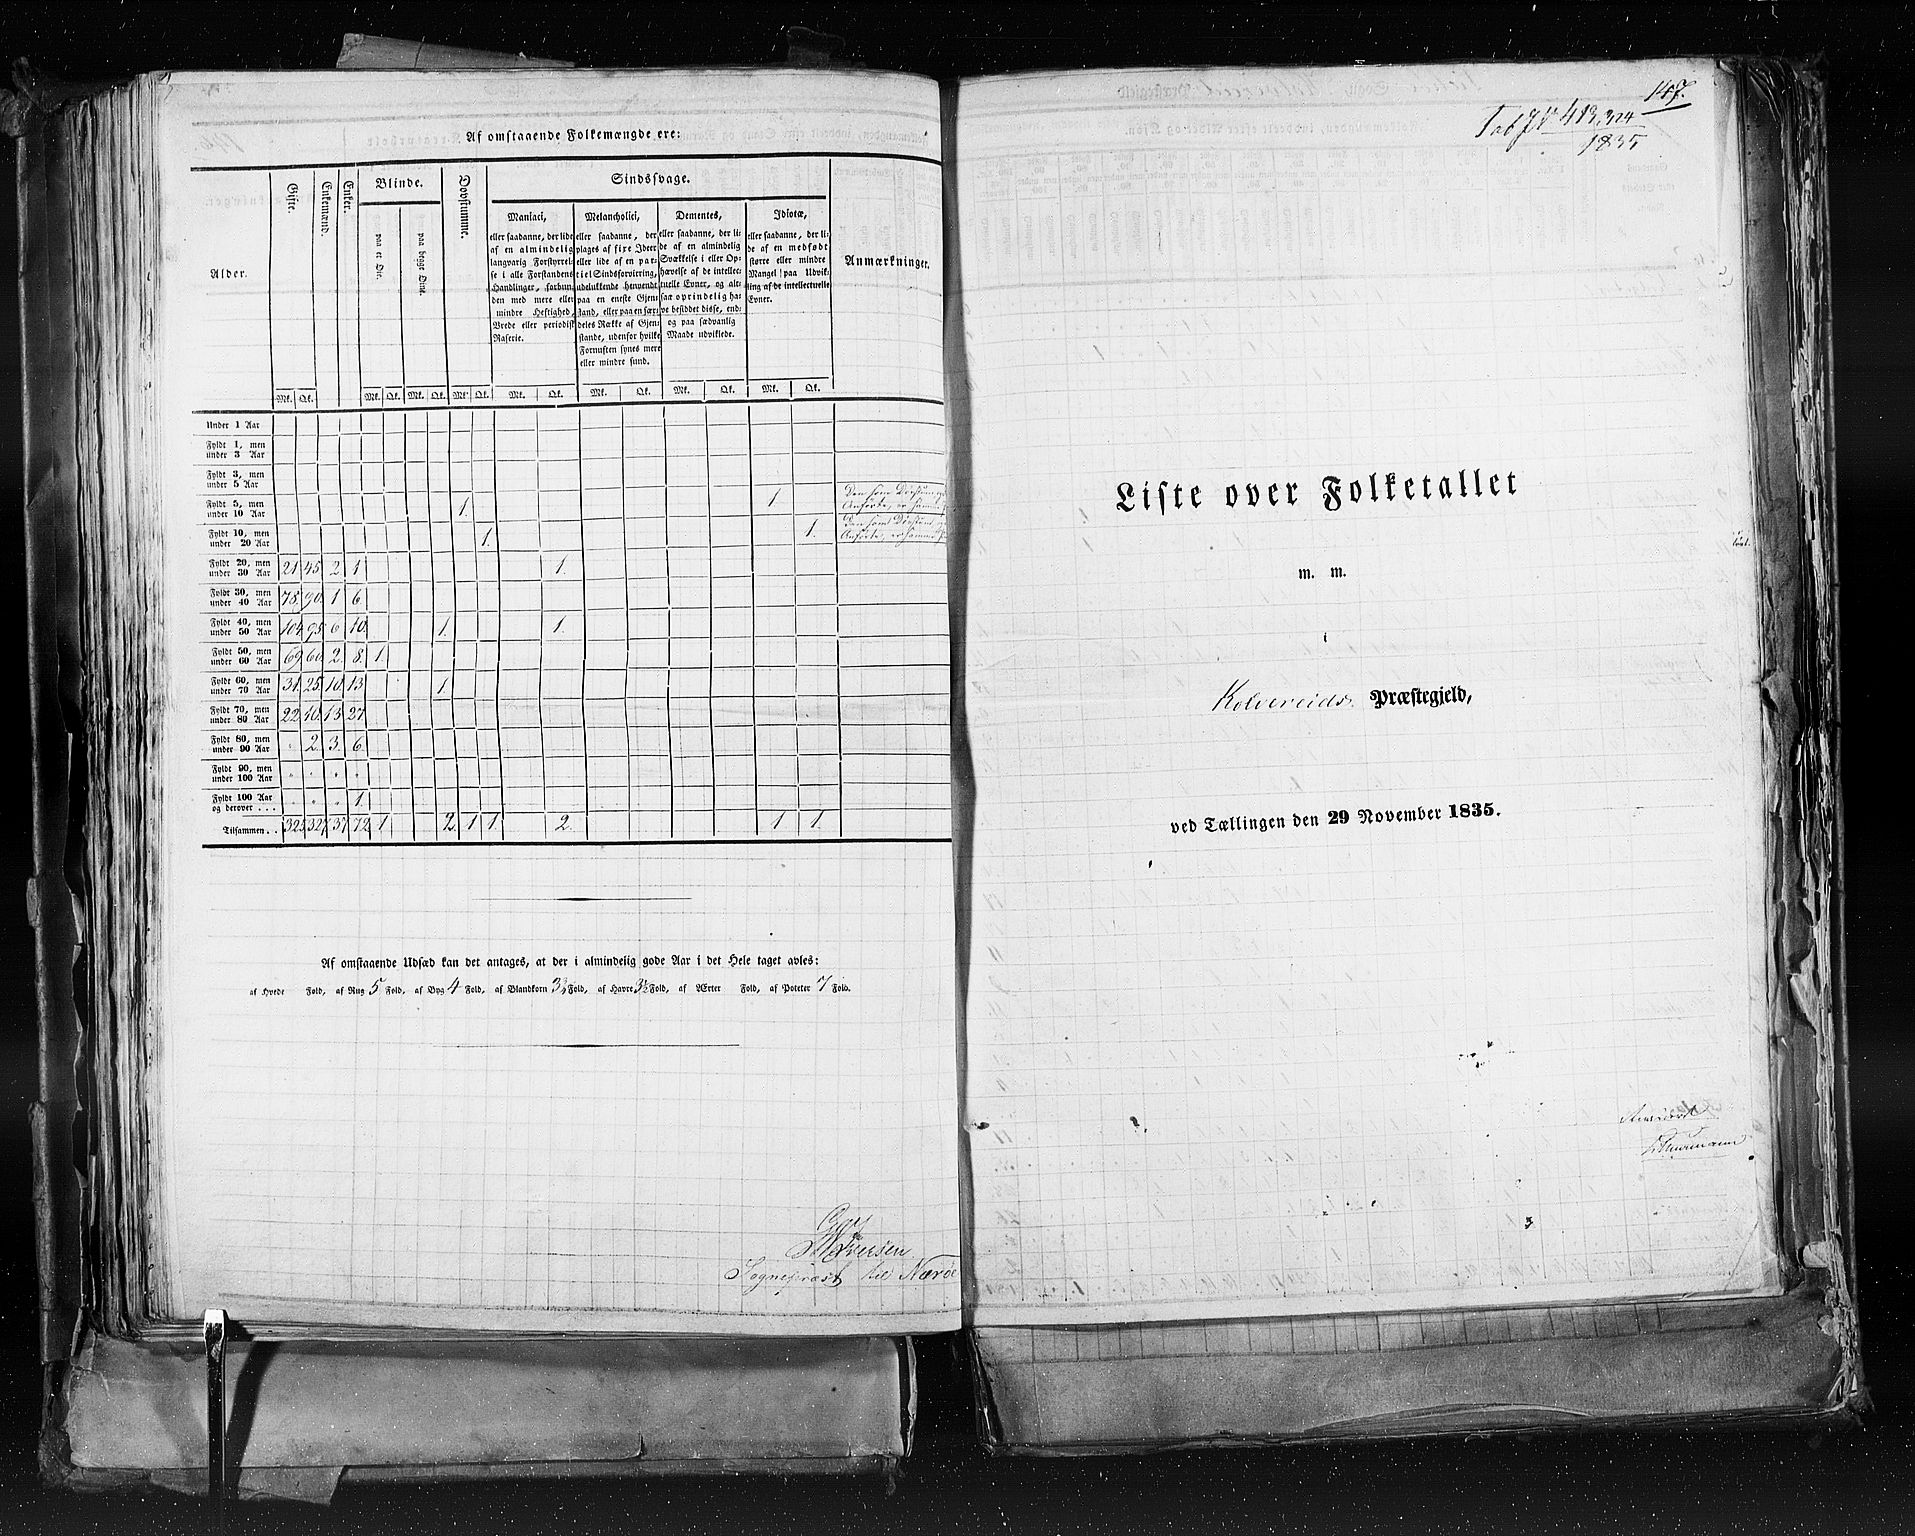 RA, Folketellingen 1835, bind 9: Nordre Trondhjem amt, Nordland amt og Finnmarken amt, 1835, s. 147